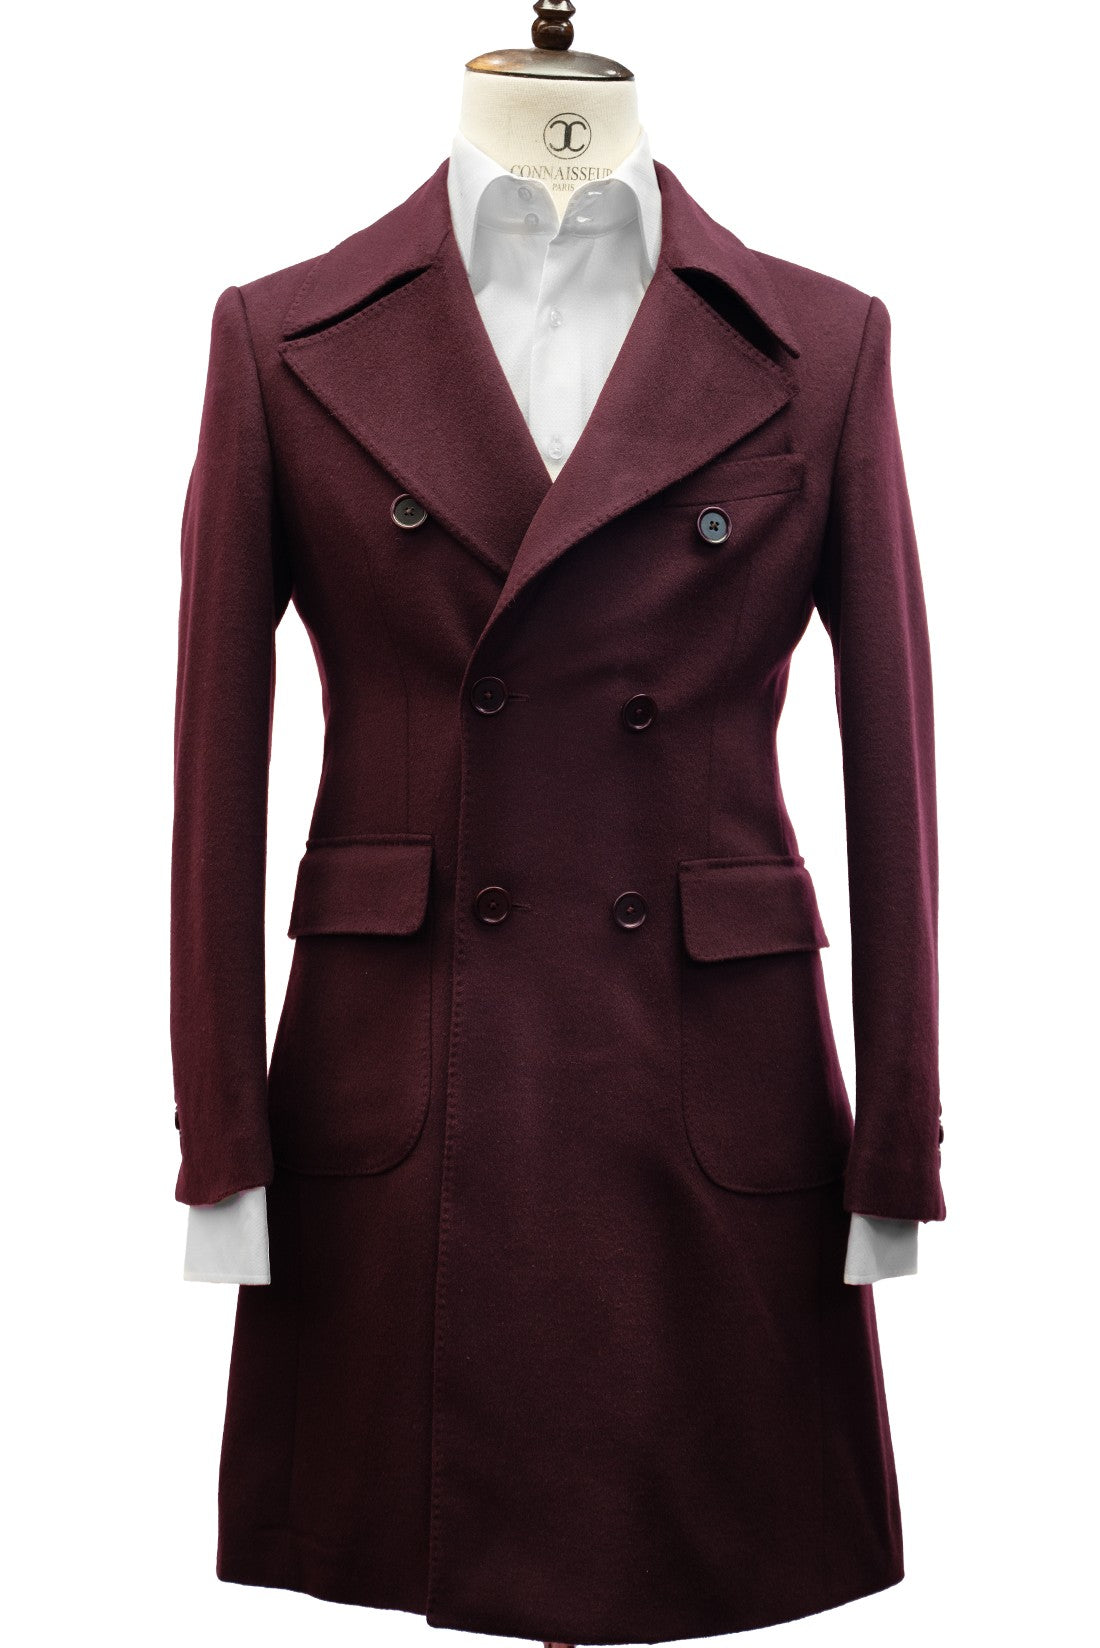 CONNAISSEUR PARIS - Noble Burgundy Cashmere Wool Slim Fit Overcoat